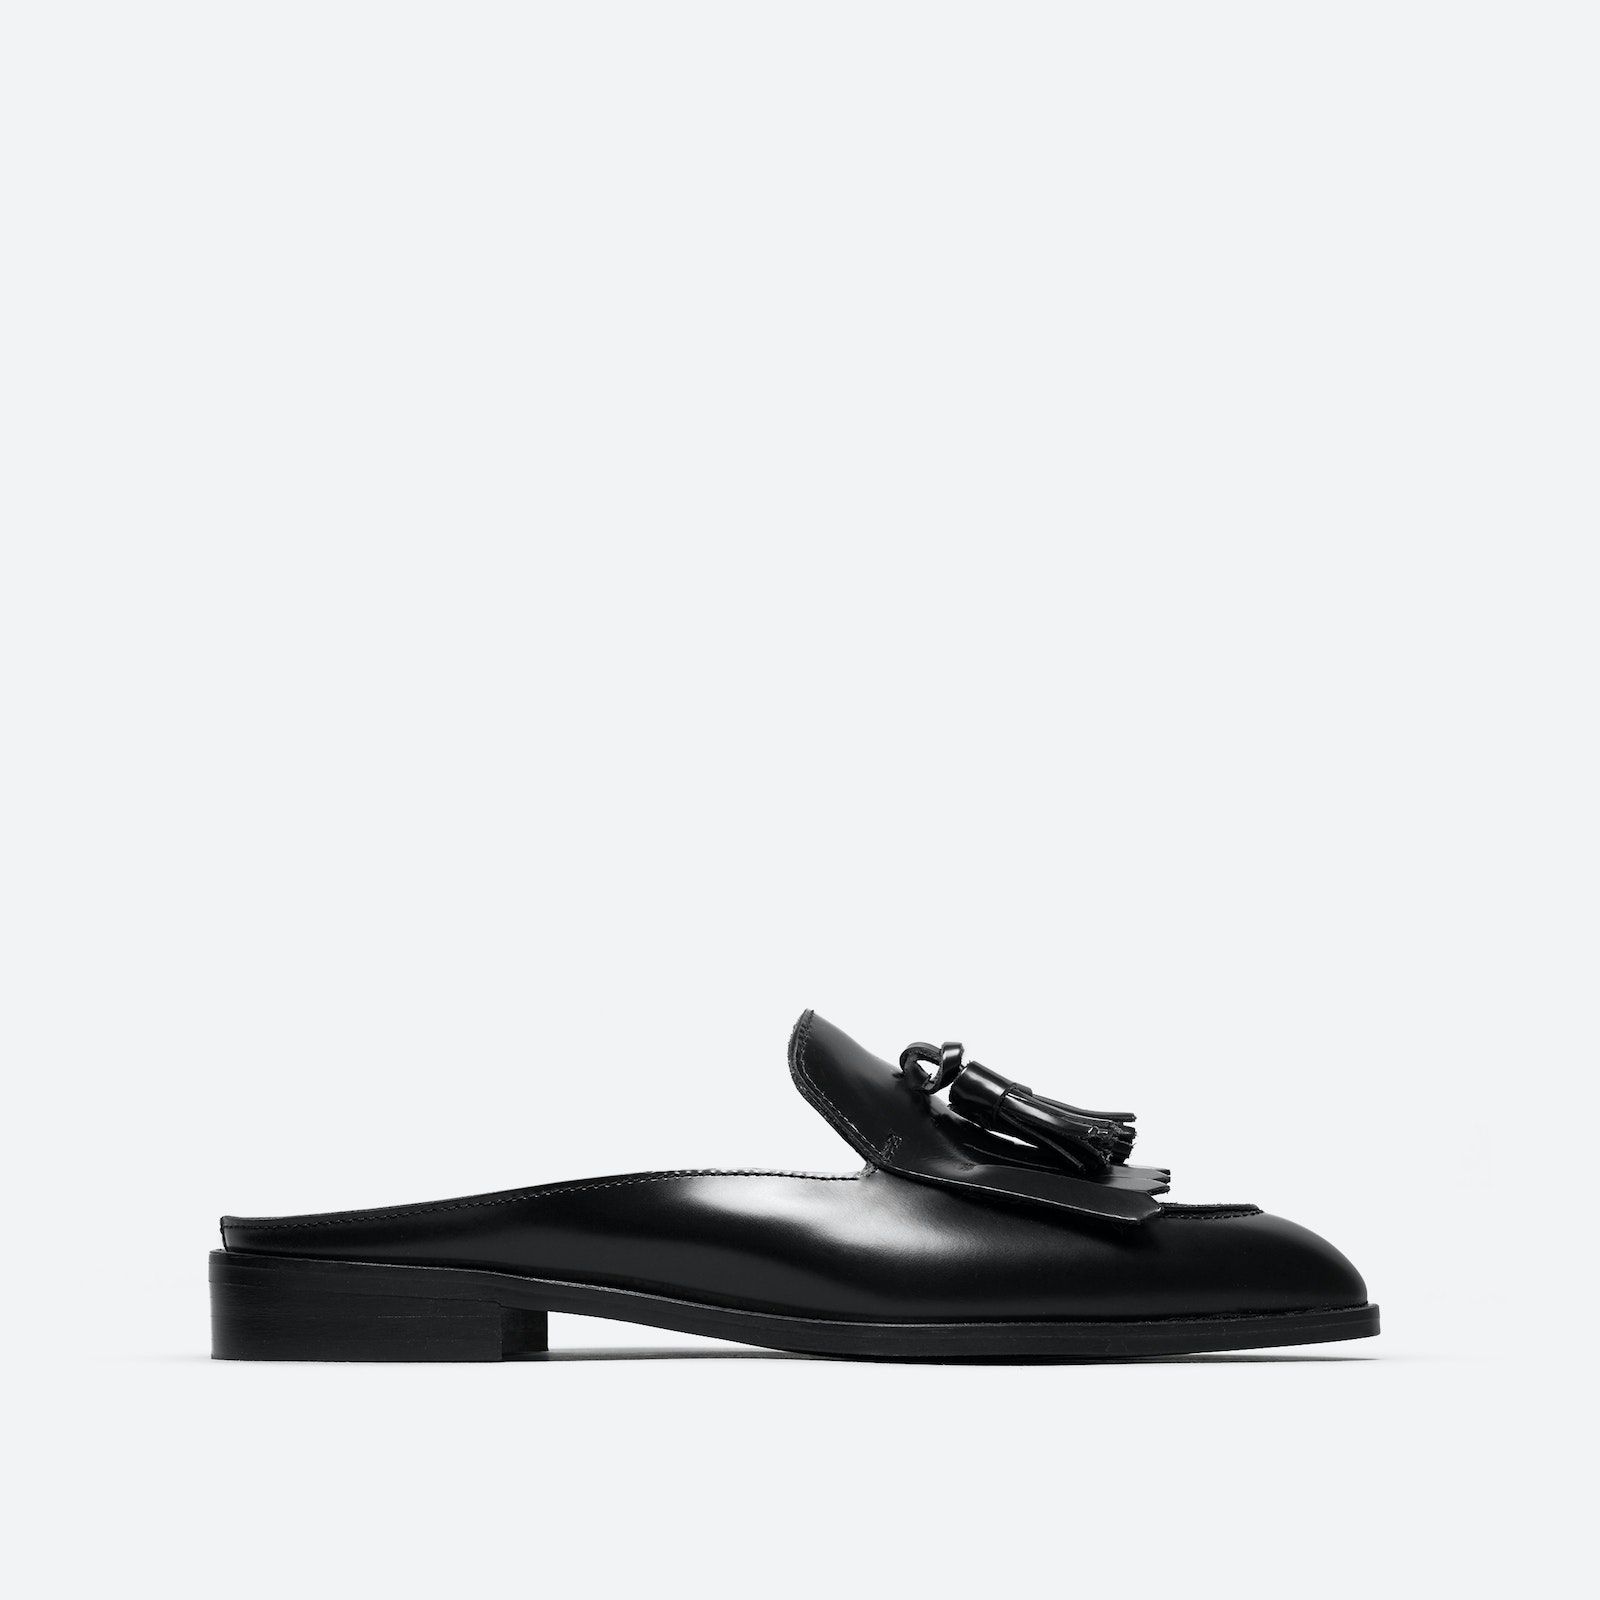 Women's Tassel Loafers Mule by Everlane in Black, Size 5 | Everlane